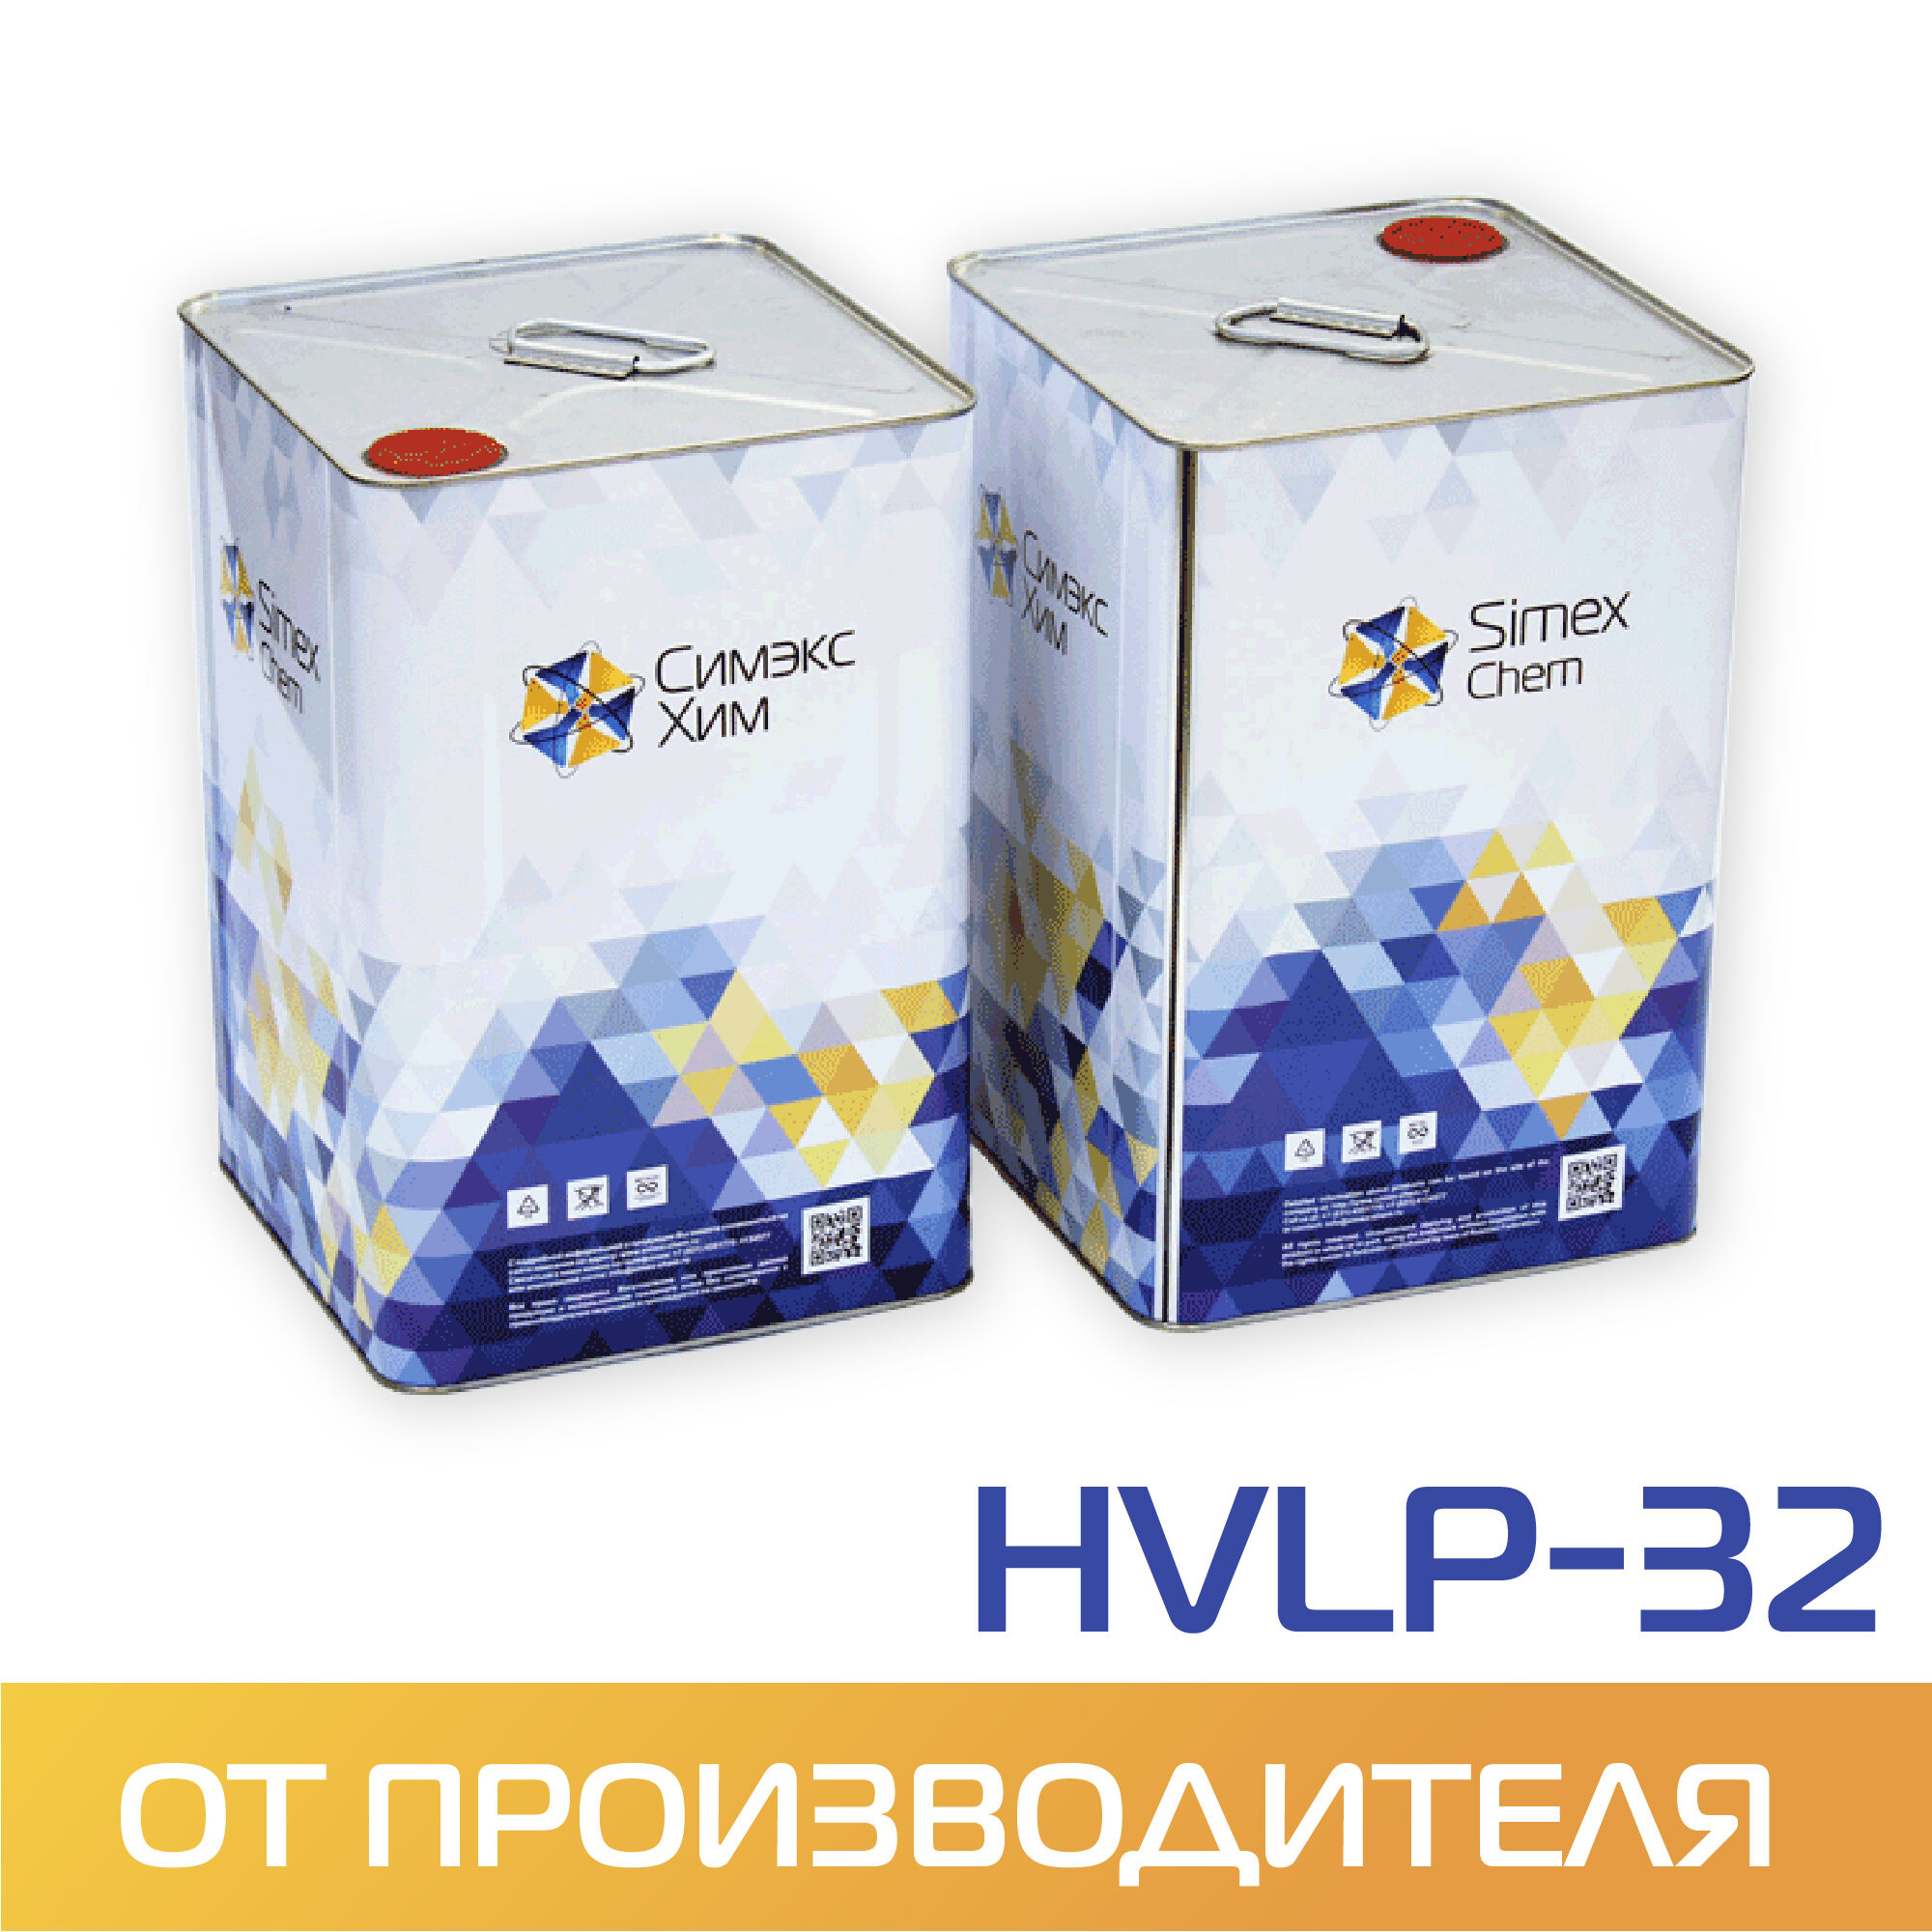 Масло гидравлическое HVLP-3 бидон 15 кг